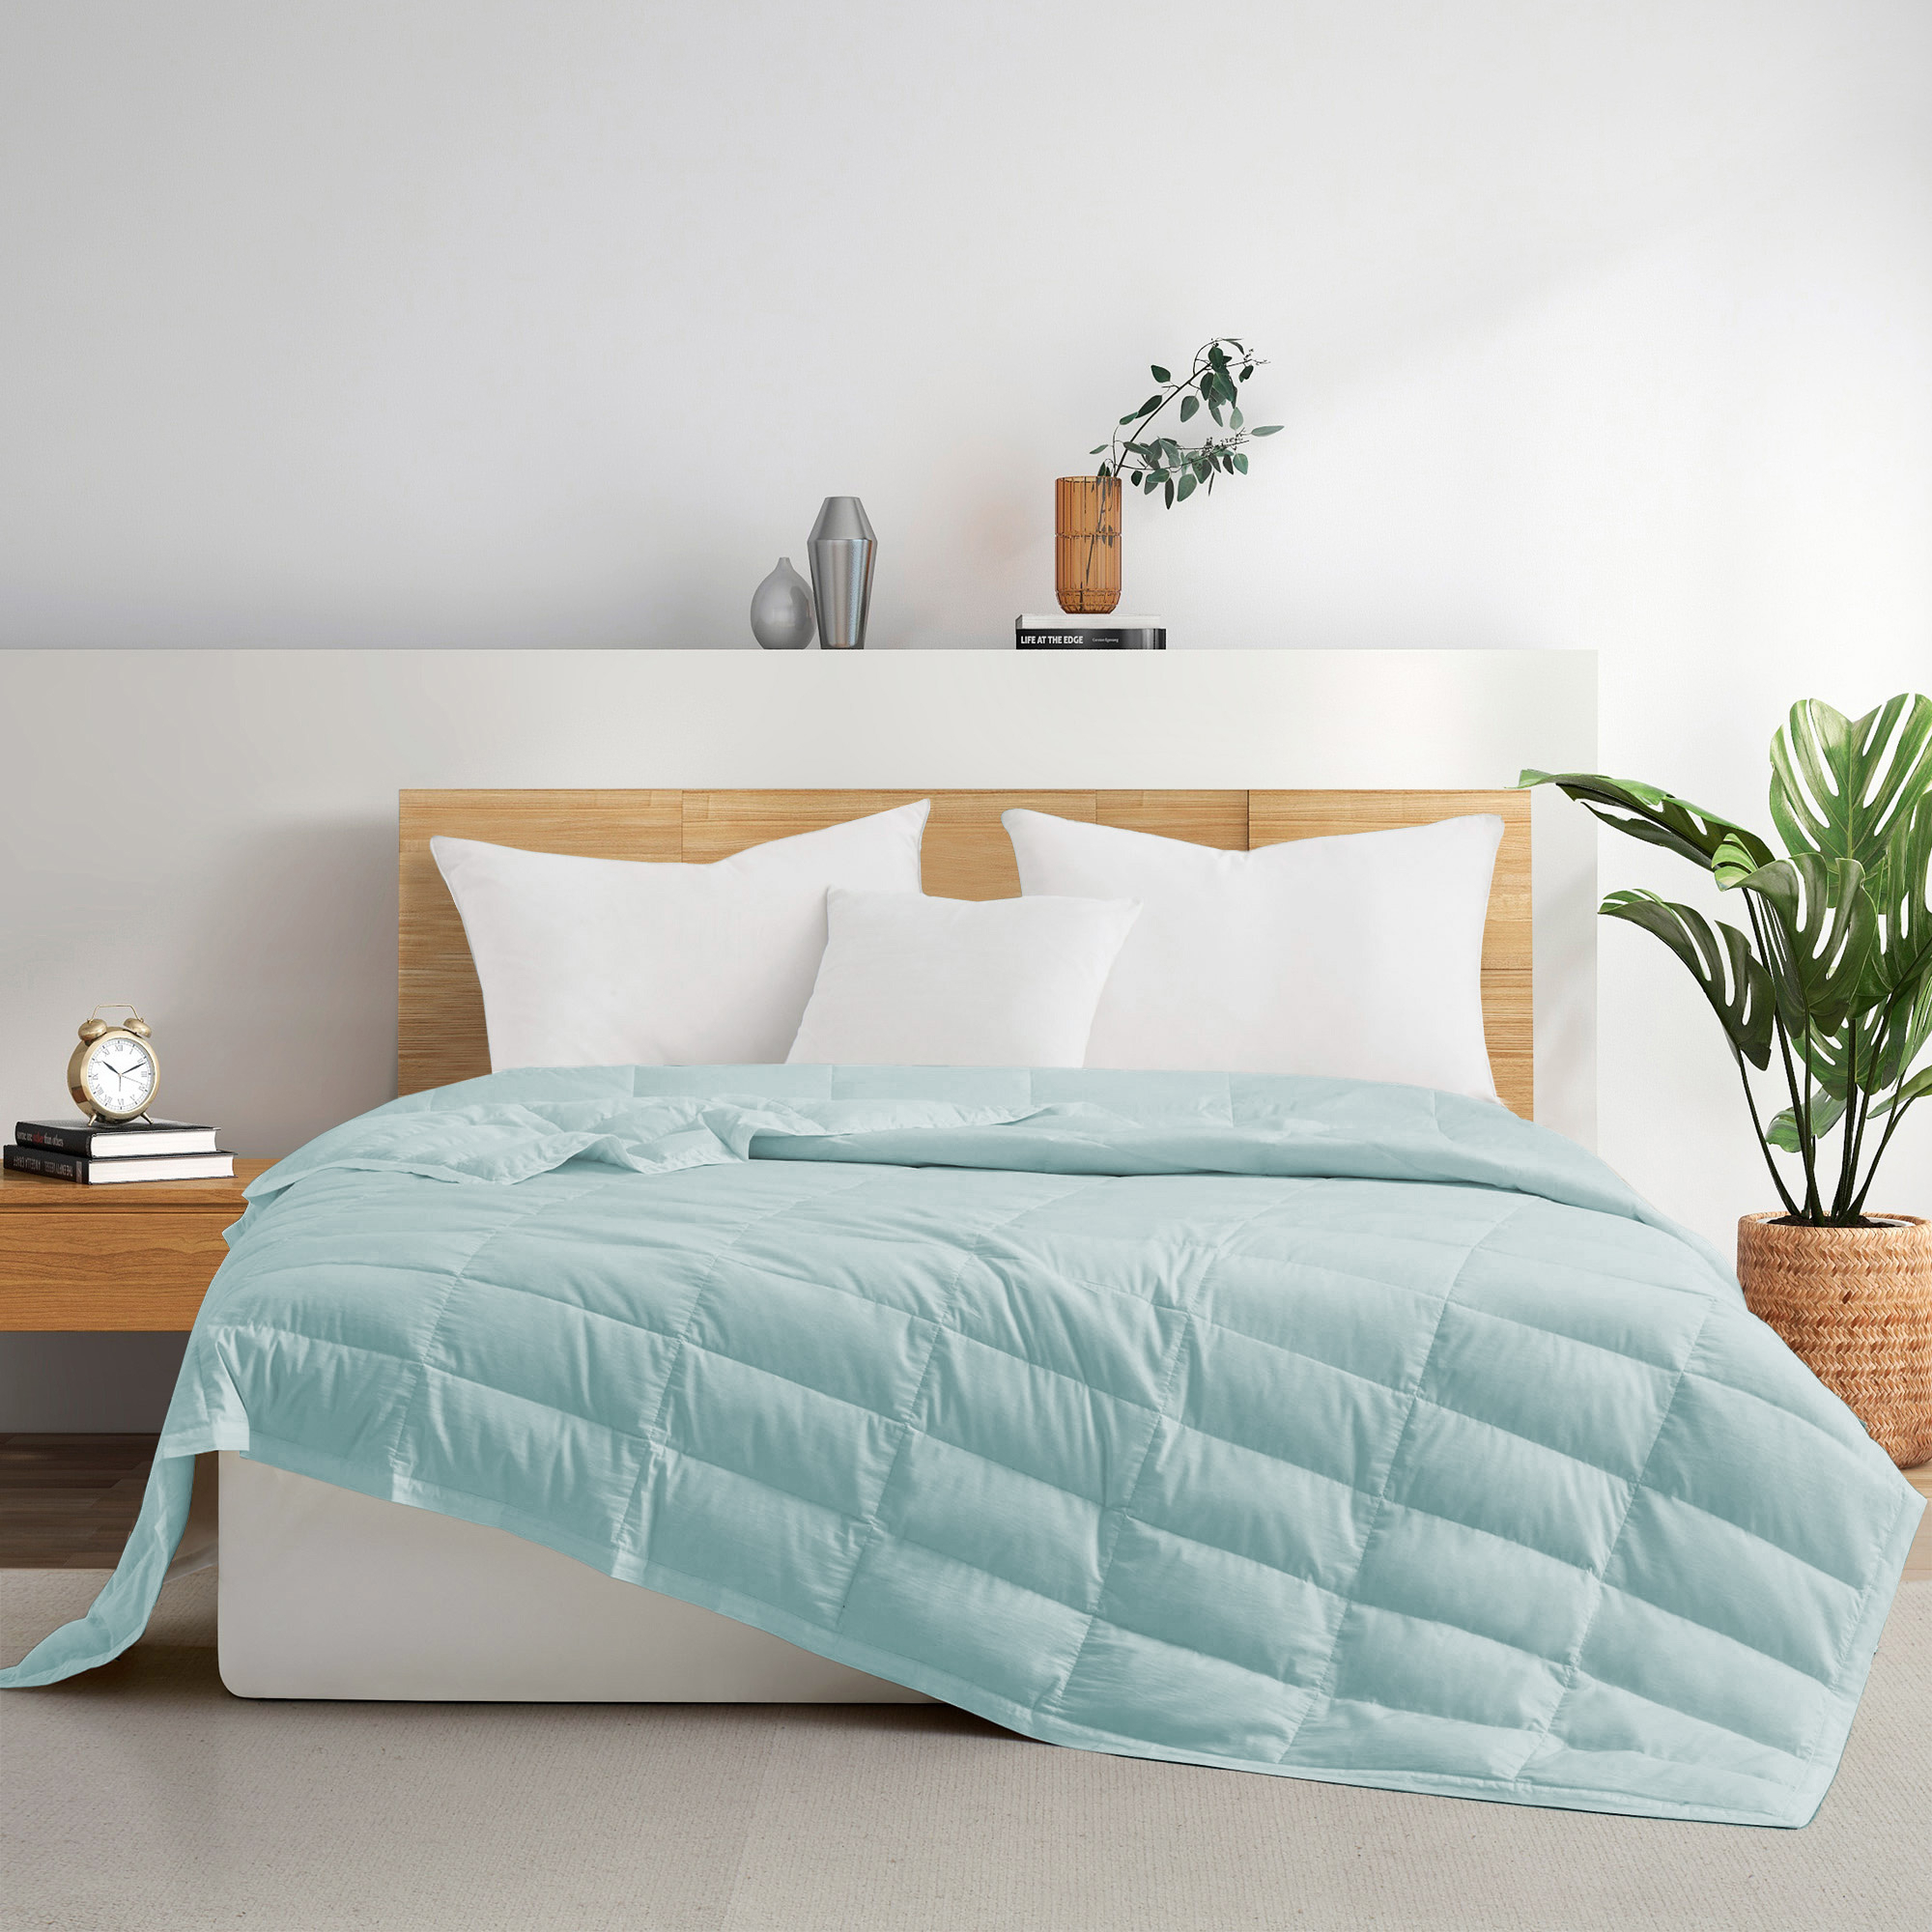 TENCELâ¢ Lyocell Lightweight Cooling Down Blanket-Luxurious Comfort Summer Blanket - Light Grey, Full/Queen